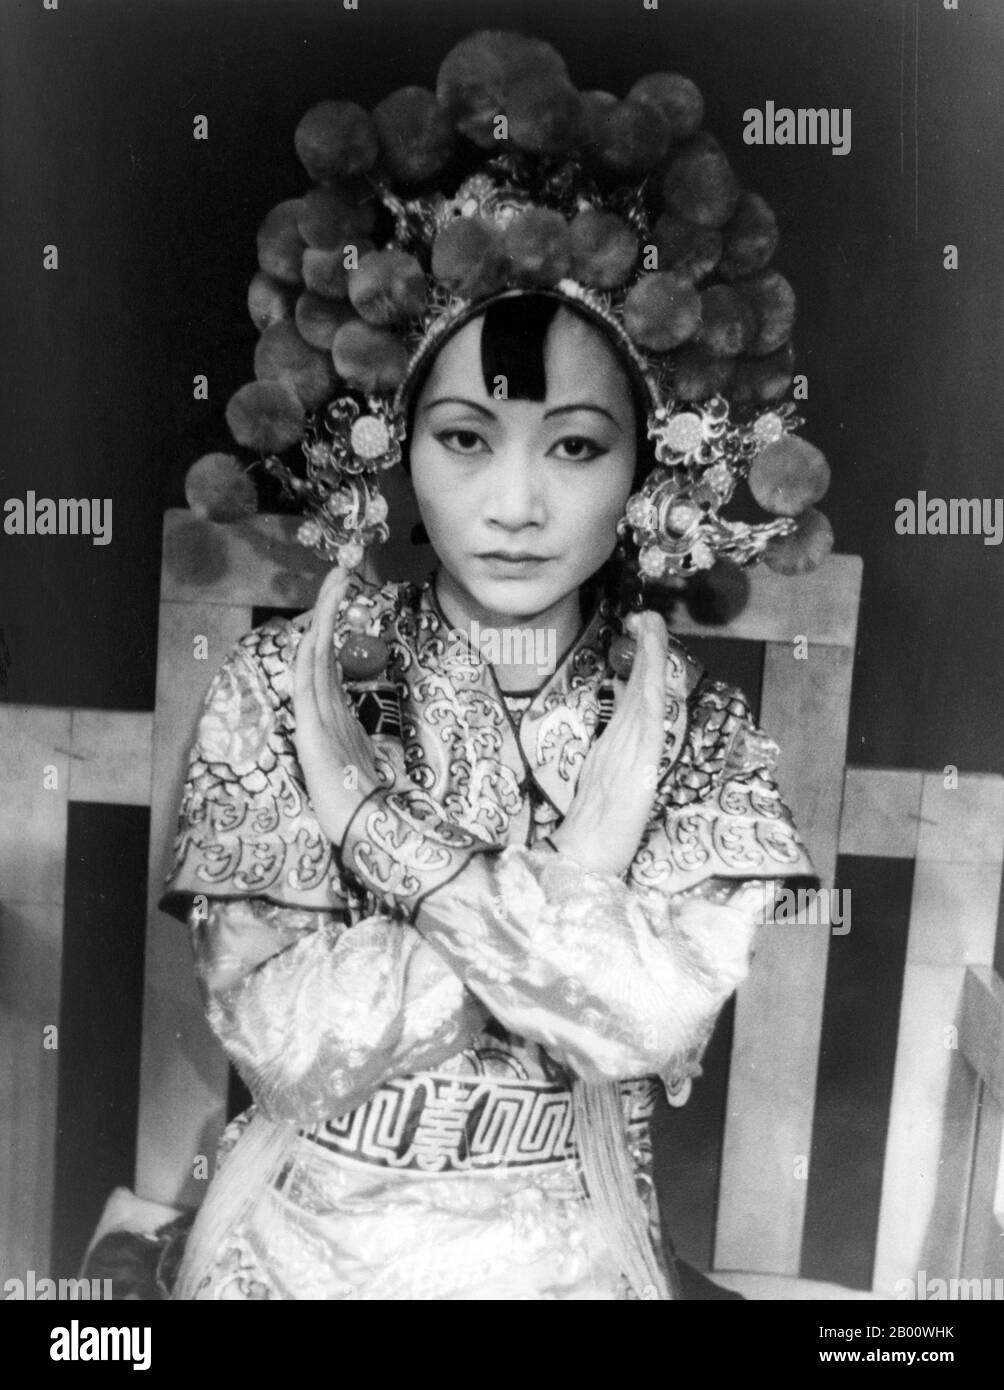 USA: Ritratto dell'attrice statunitense Anna May Wong, 'Turandot' a Westport, fotografato da Carl Van Vechten (1880-1964), 1937. Anna May Wong (3 gennaio 1905 – 3 febbraio 1961) è stata una . La sua lunga e variegata carriera ha abbracciato film, televisione, palcoscenico e radio sia silenziosi che sonori. Foto Stock